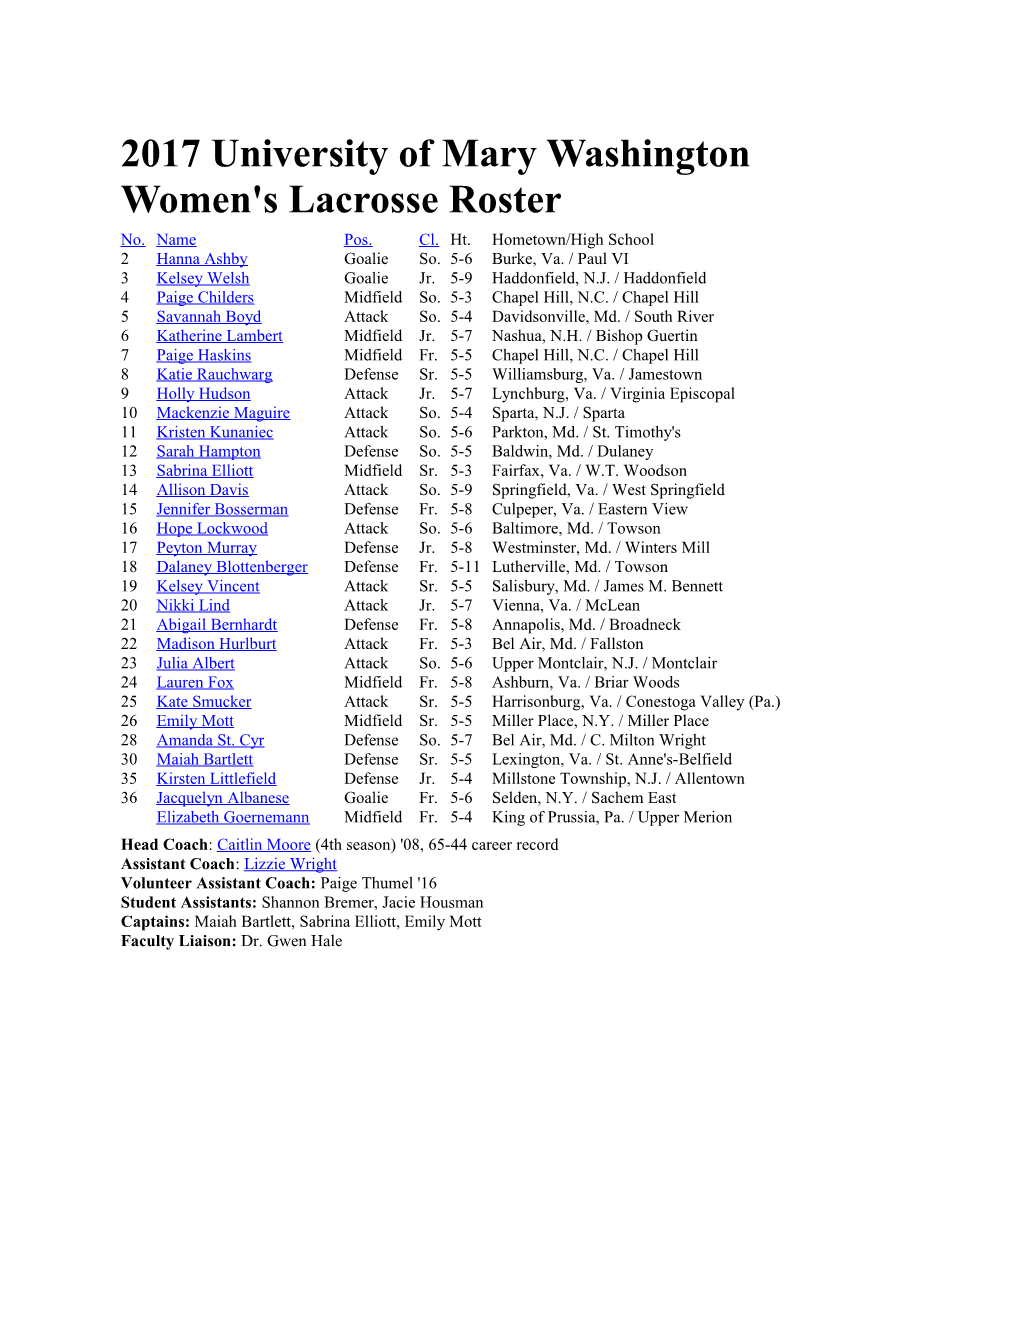 2017 University of Mary Washington Women's Lacrosse Roster